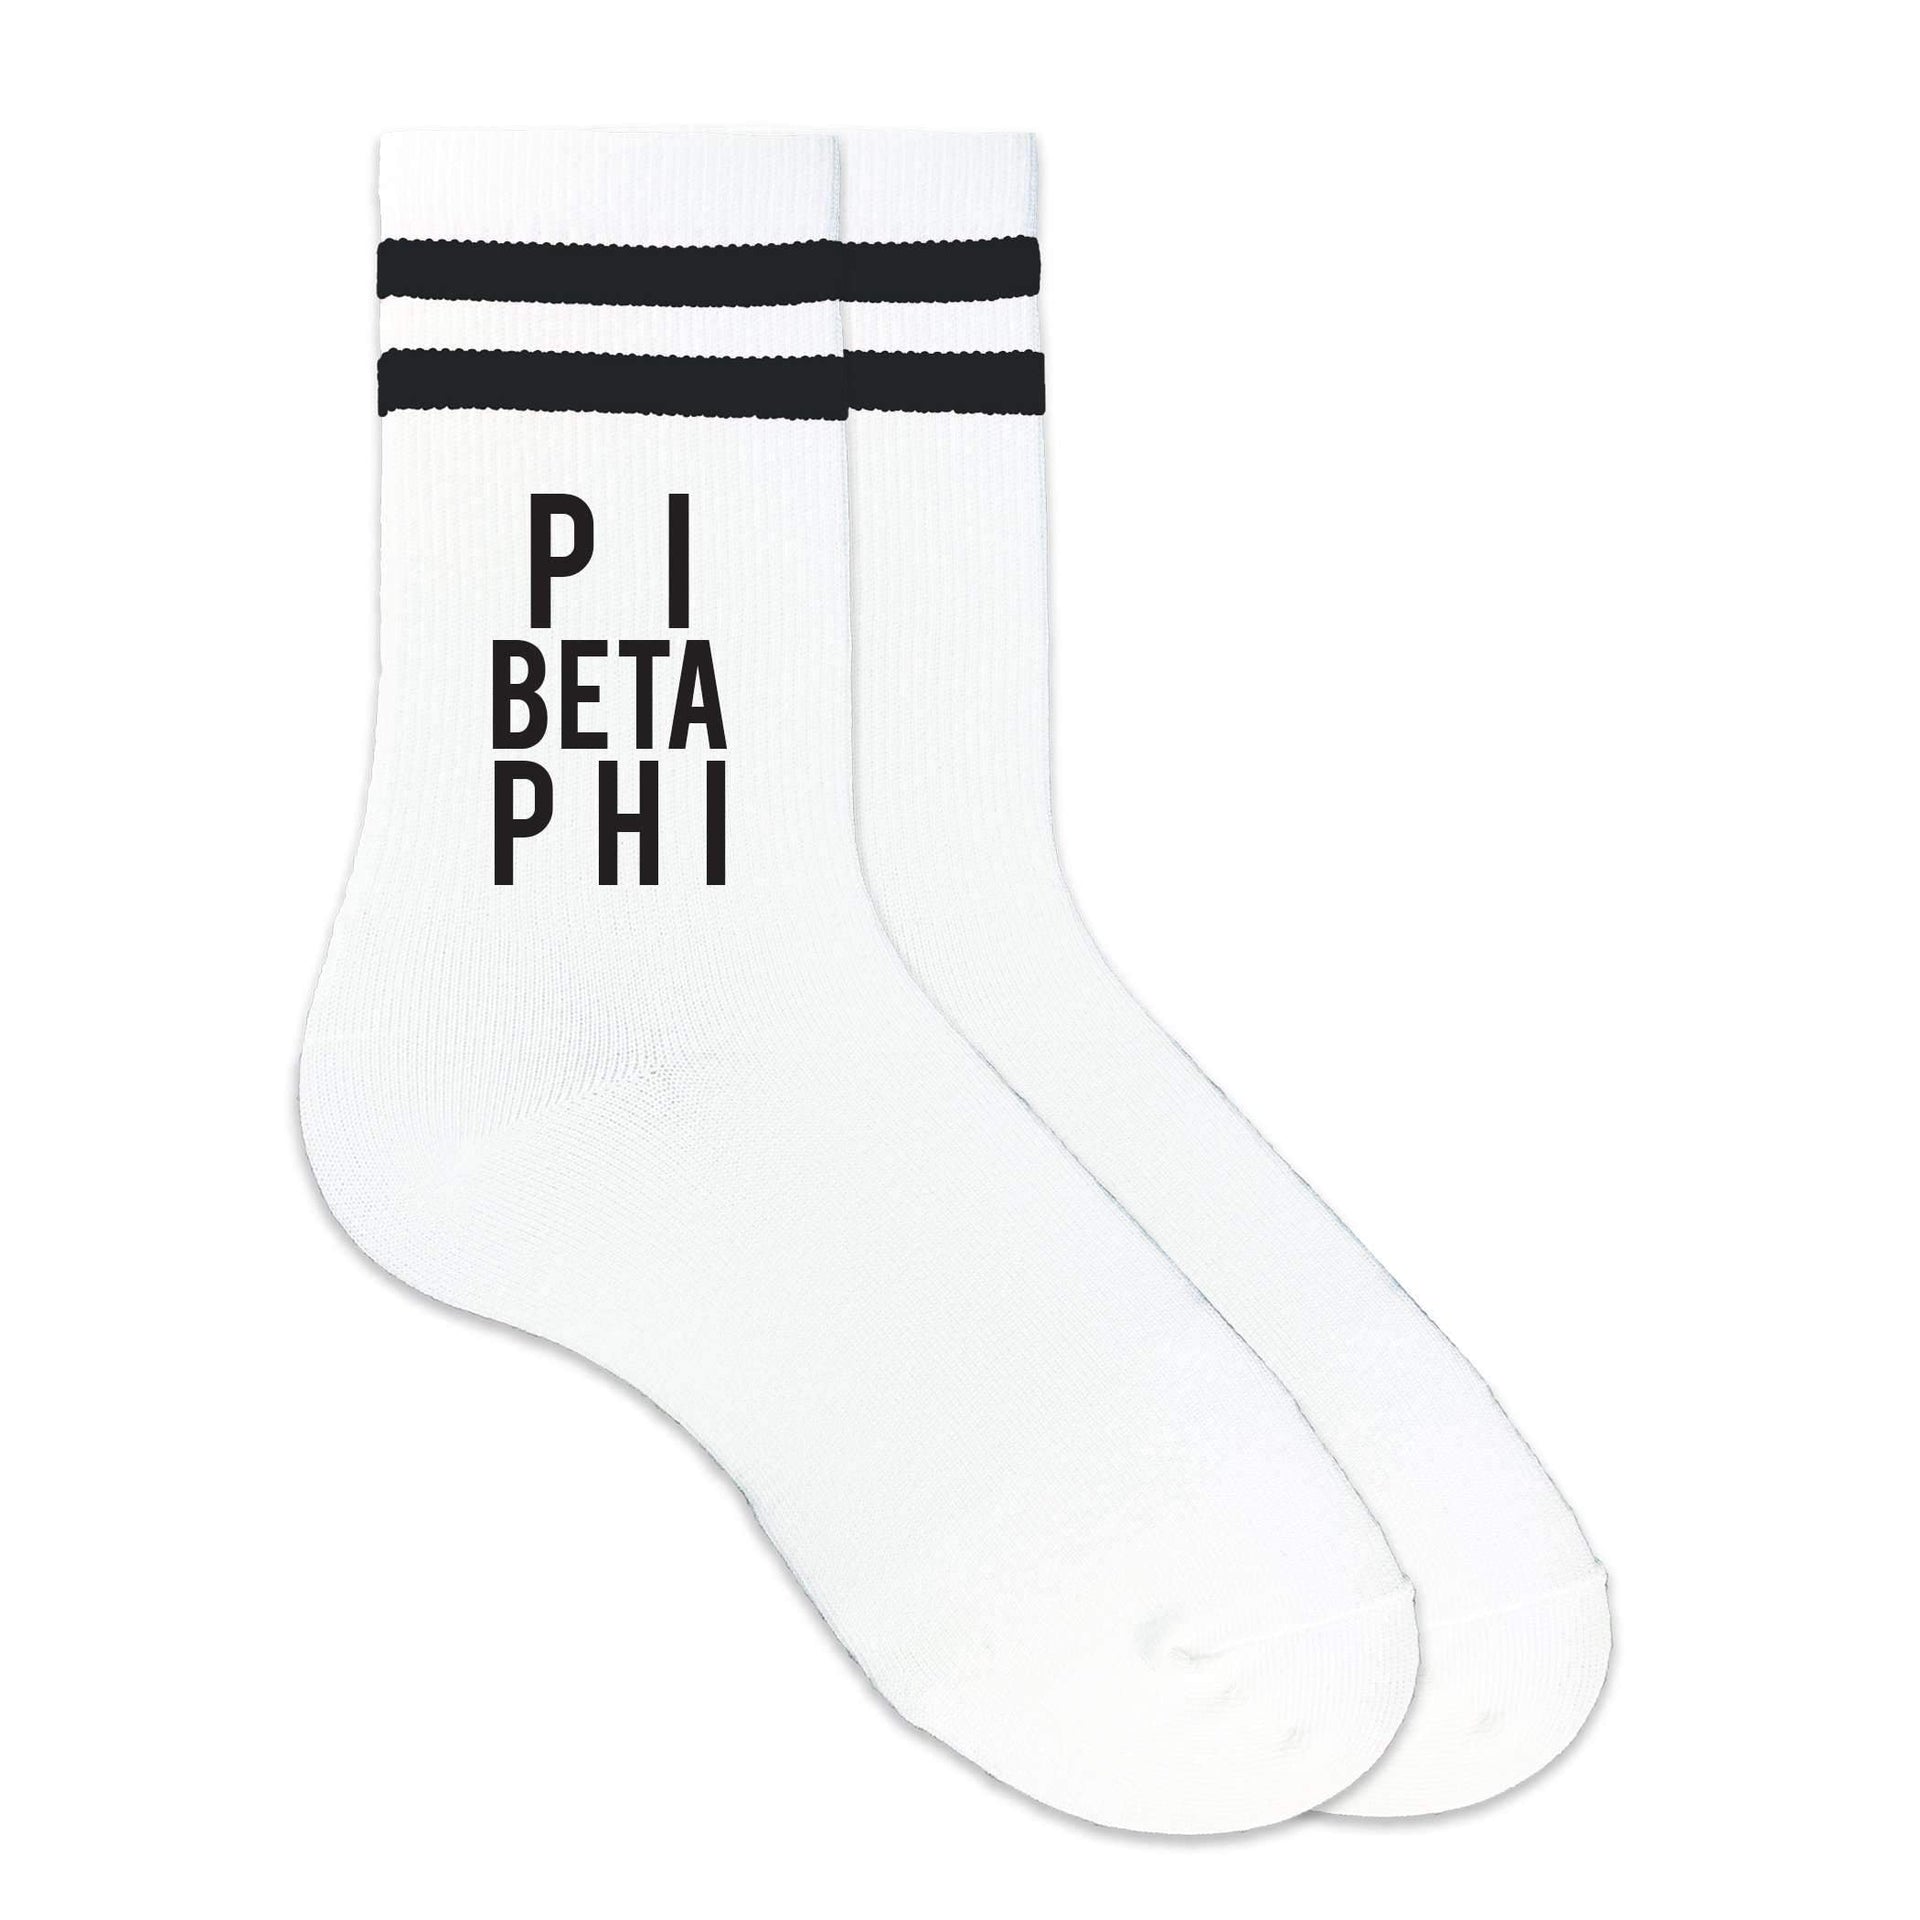 Pi Beta Phi sorority name custom printed on black striped crew socks